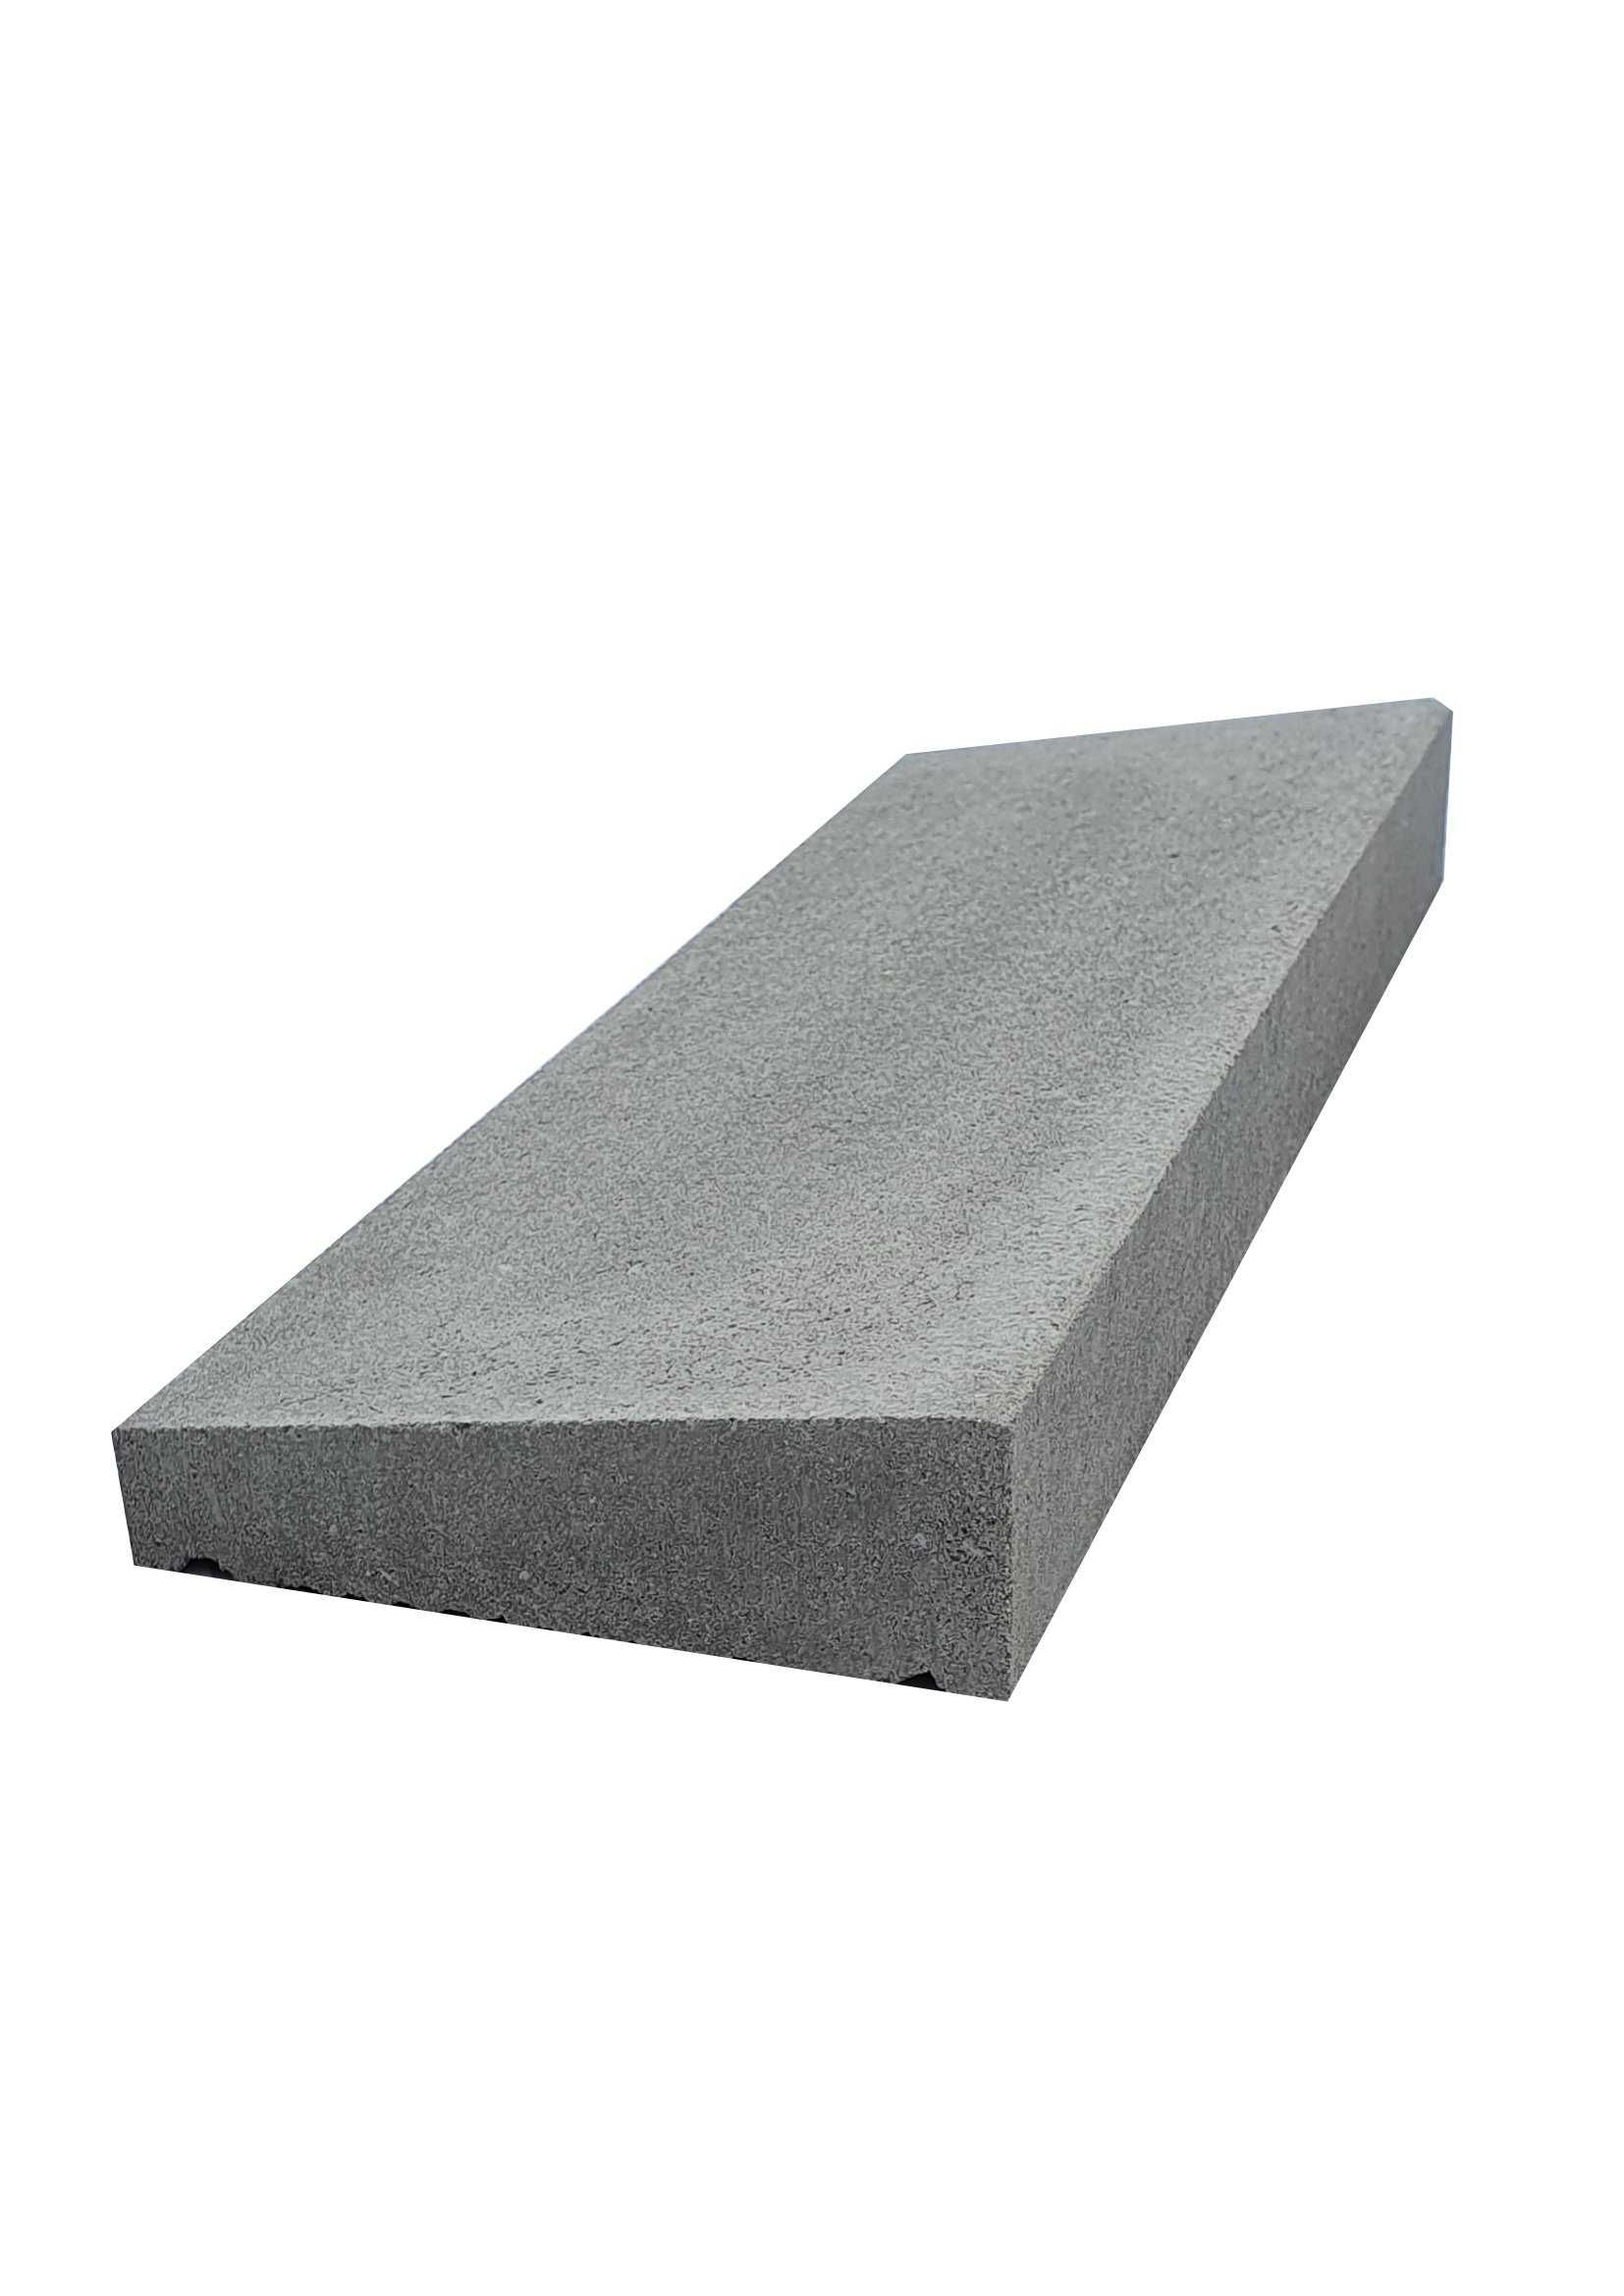 Daszki betonowe 18x50 dwuspadowe lub jednospadowe płaskie  murki mury